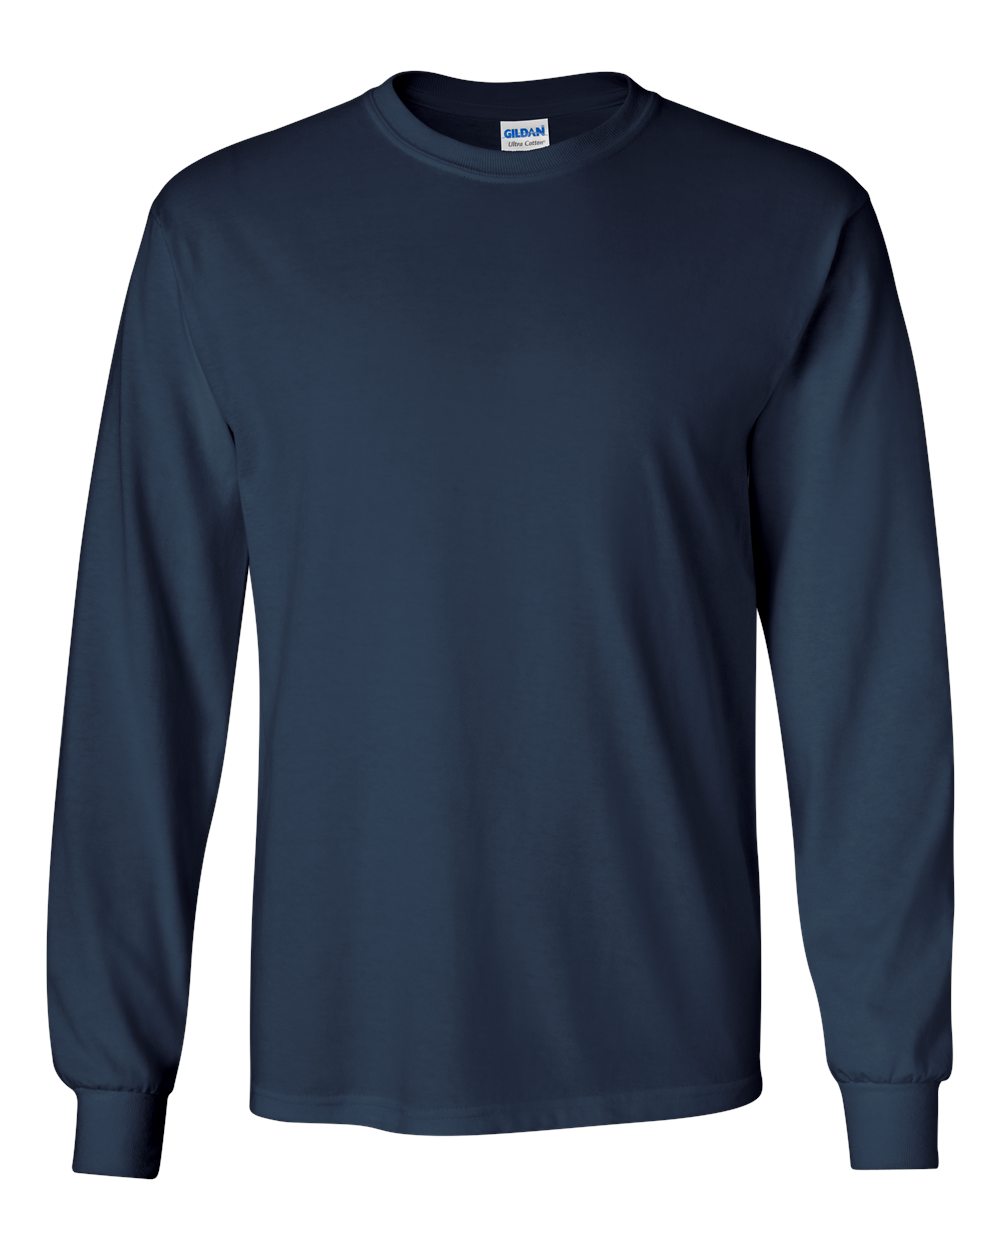 Plus Size Unisex Long Sleeve T-Shirt | Twirl